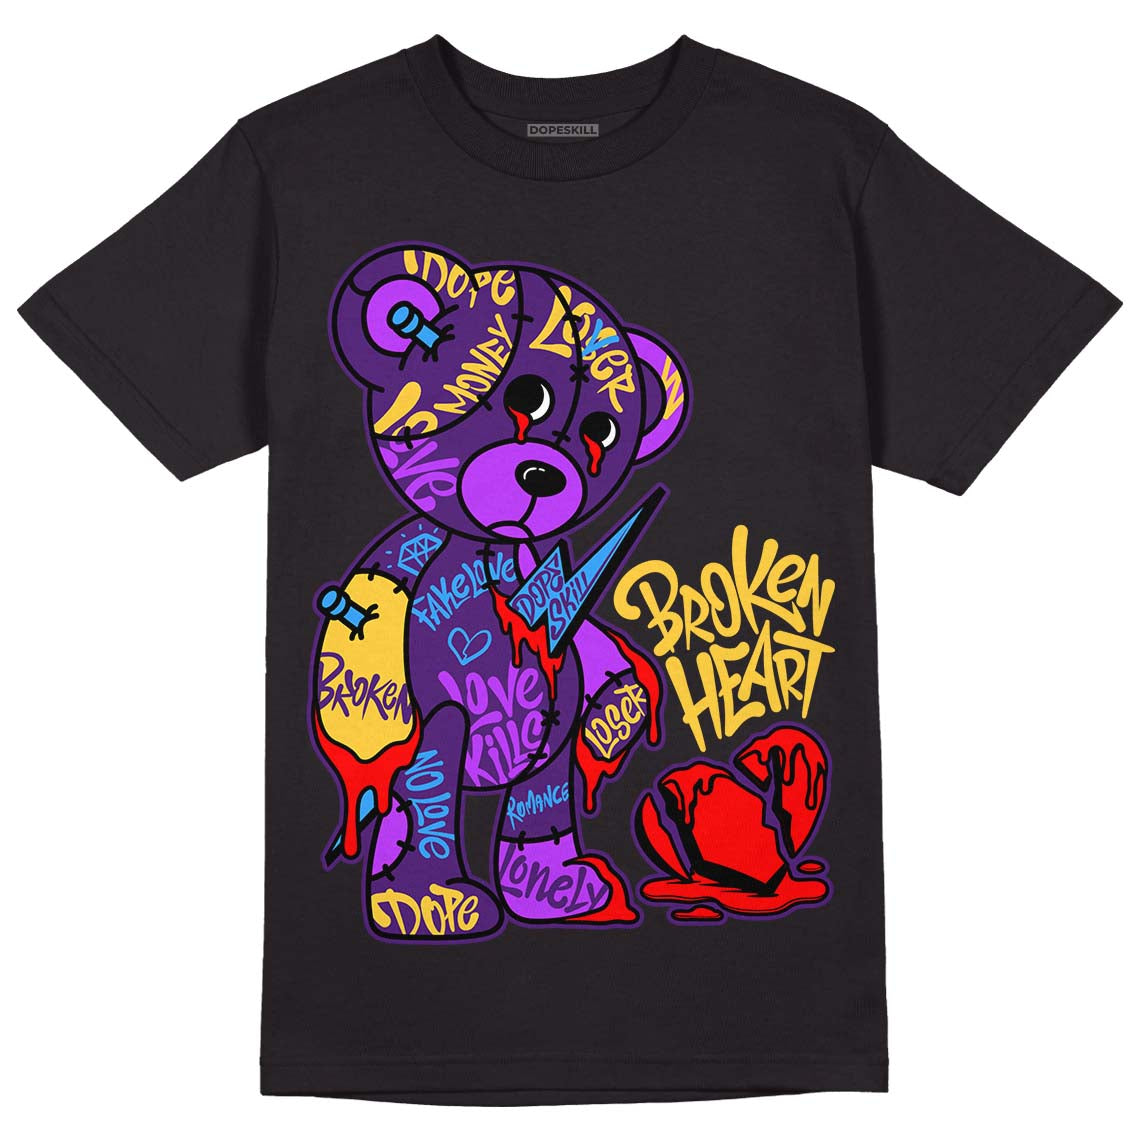 Jordan 12 “Field Purple” DopeSkill T-Shirt Broken Heart Graphic Streetwear - Black